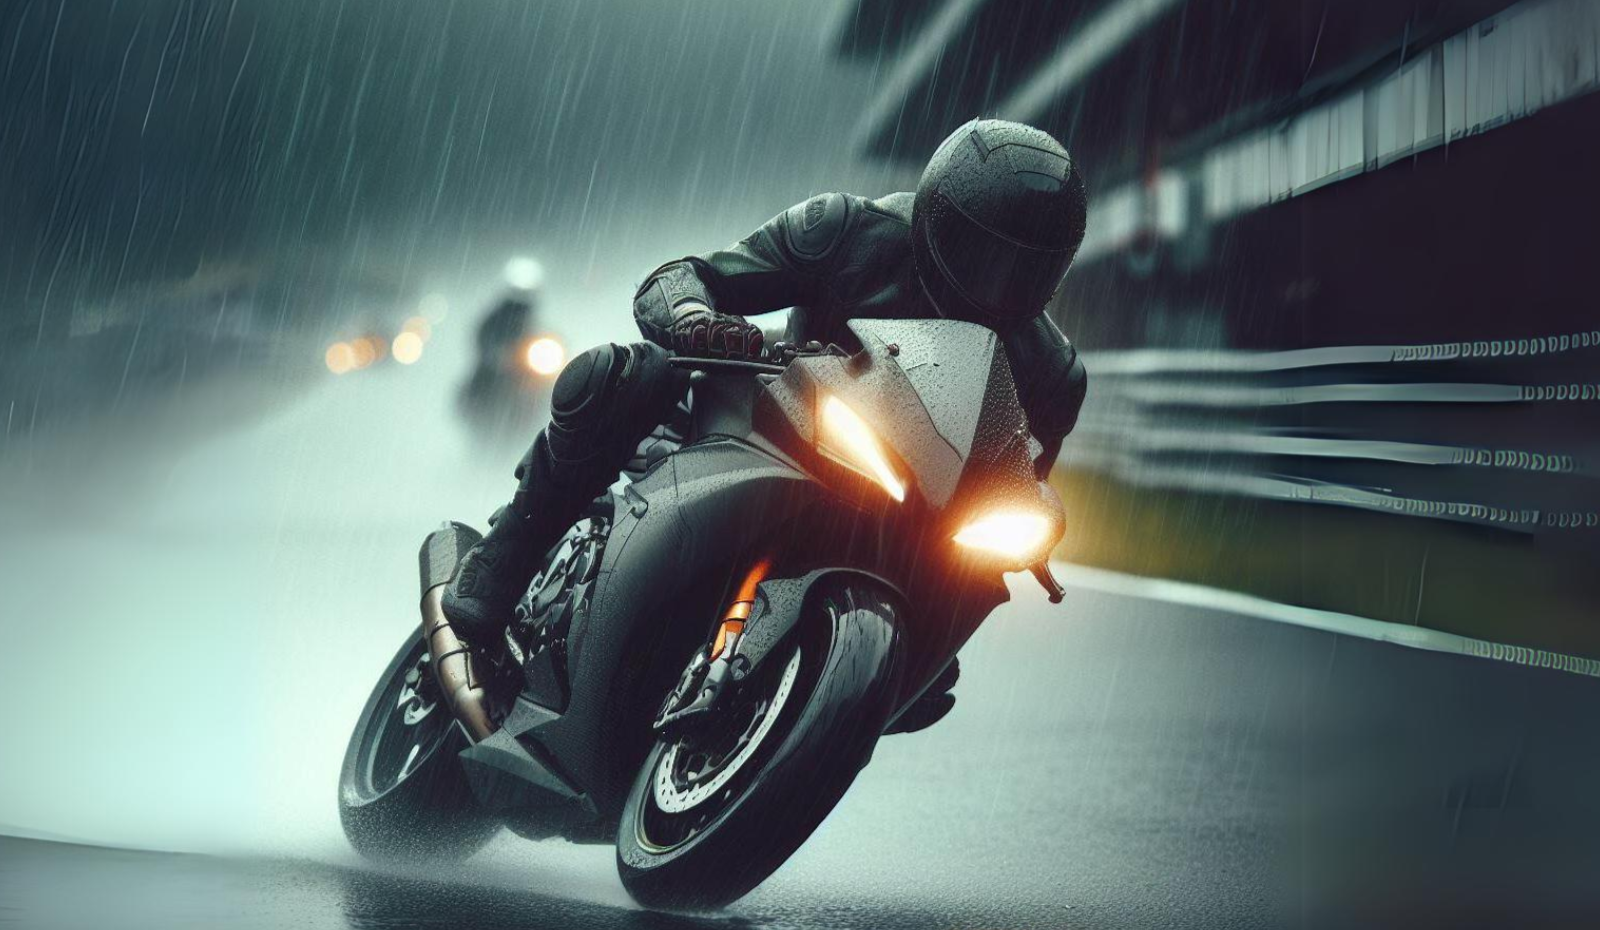 Motoqueiro andando de moto na chuva